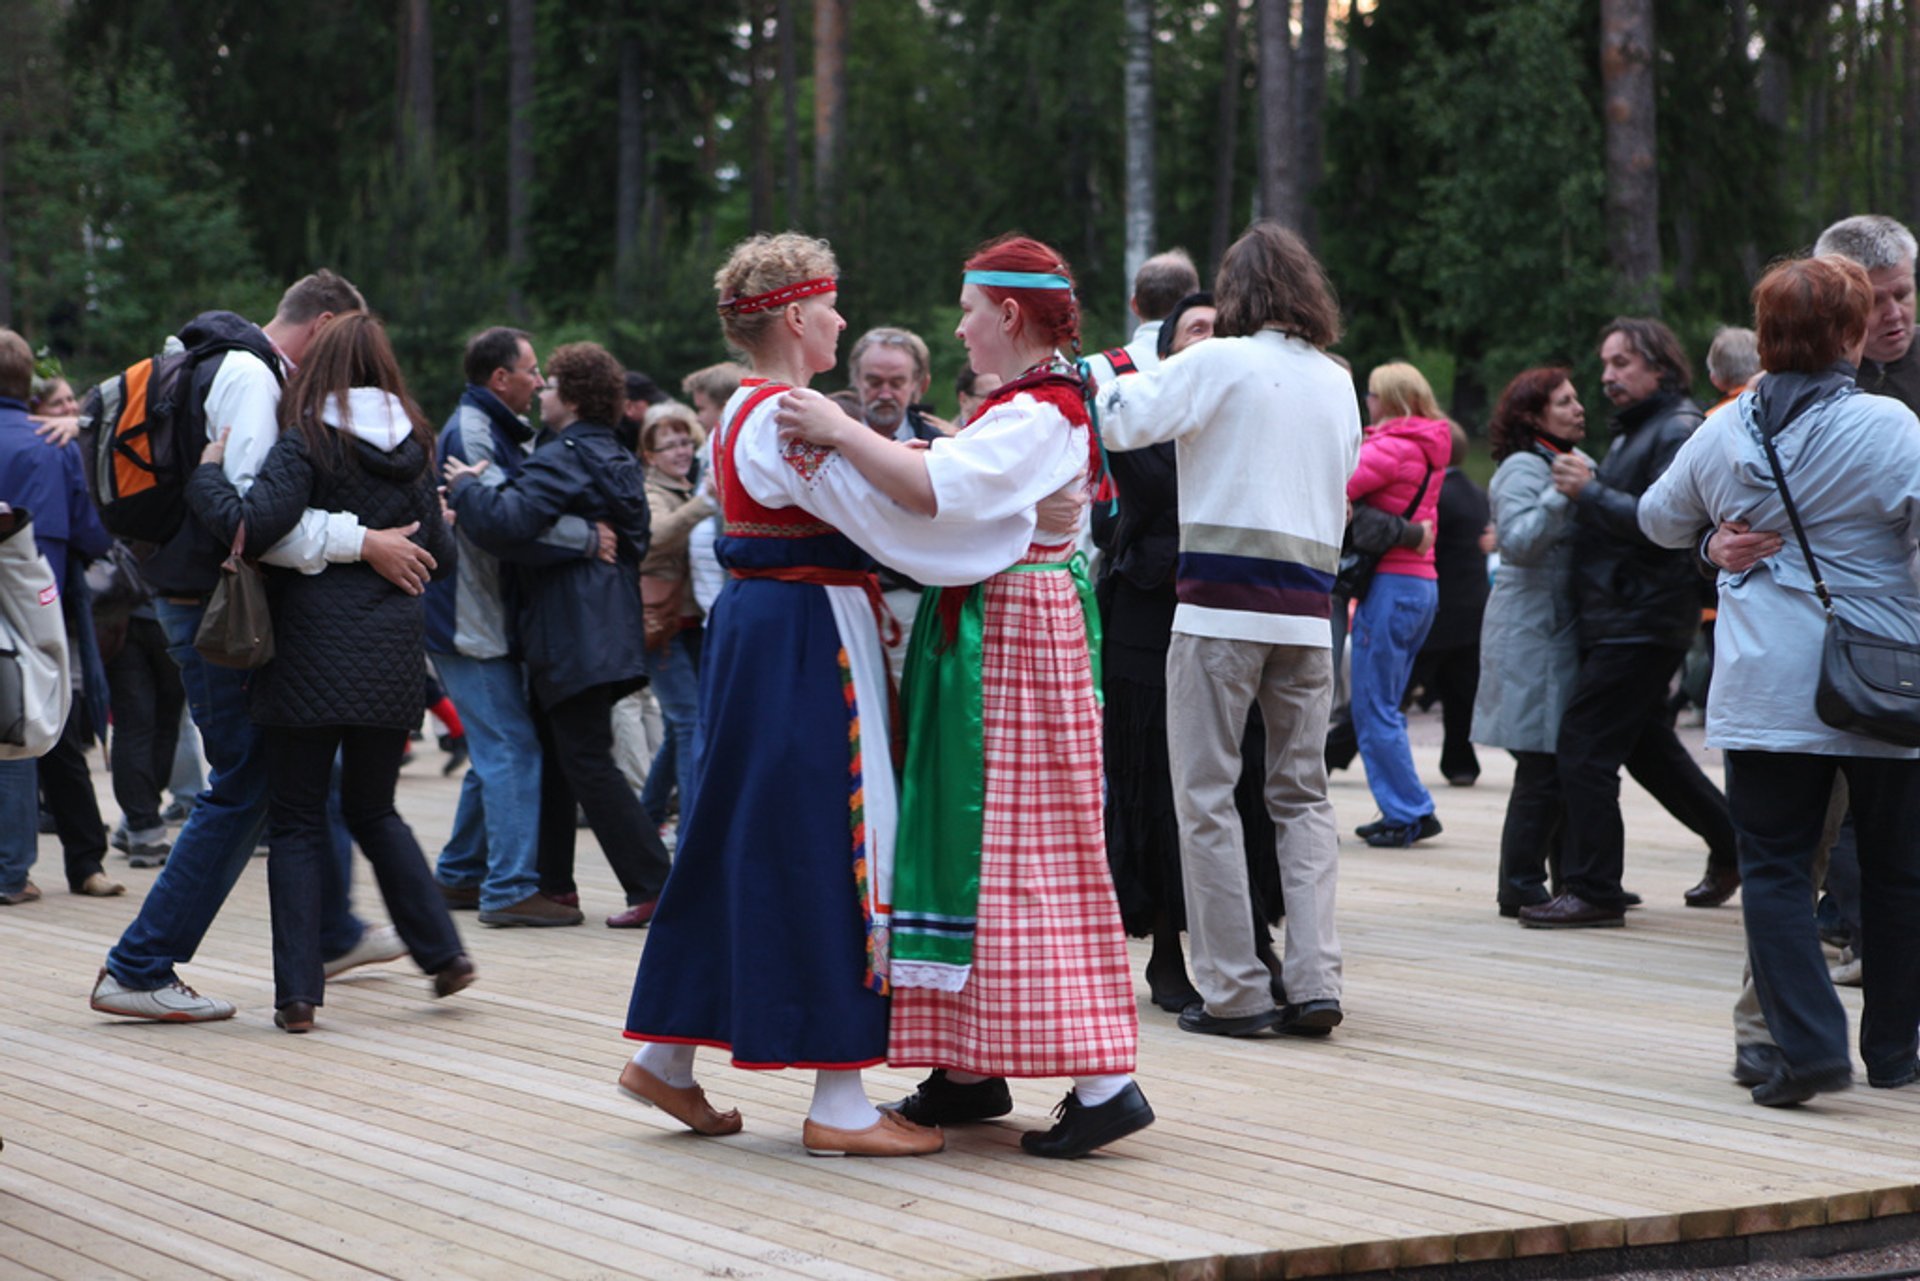 Juhannus (Midsummer) 2023 in Finland - Dates